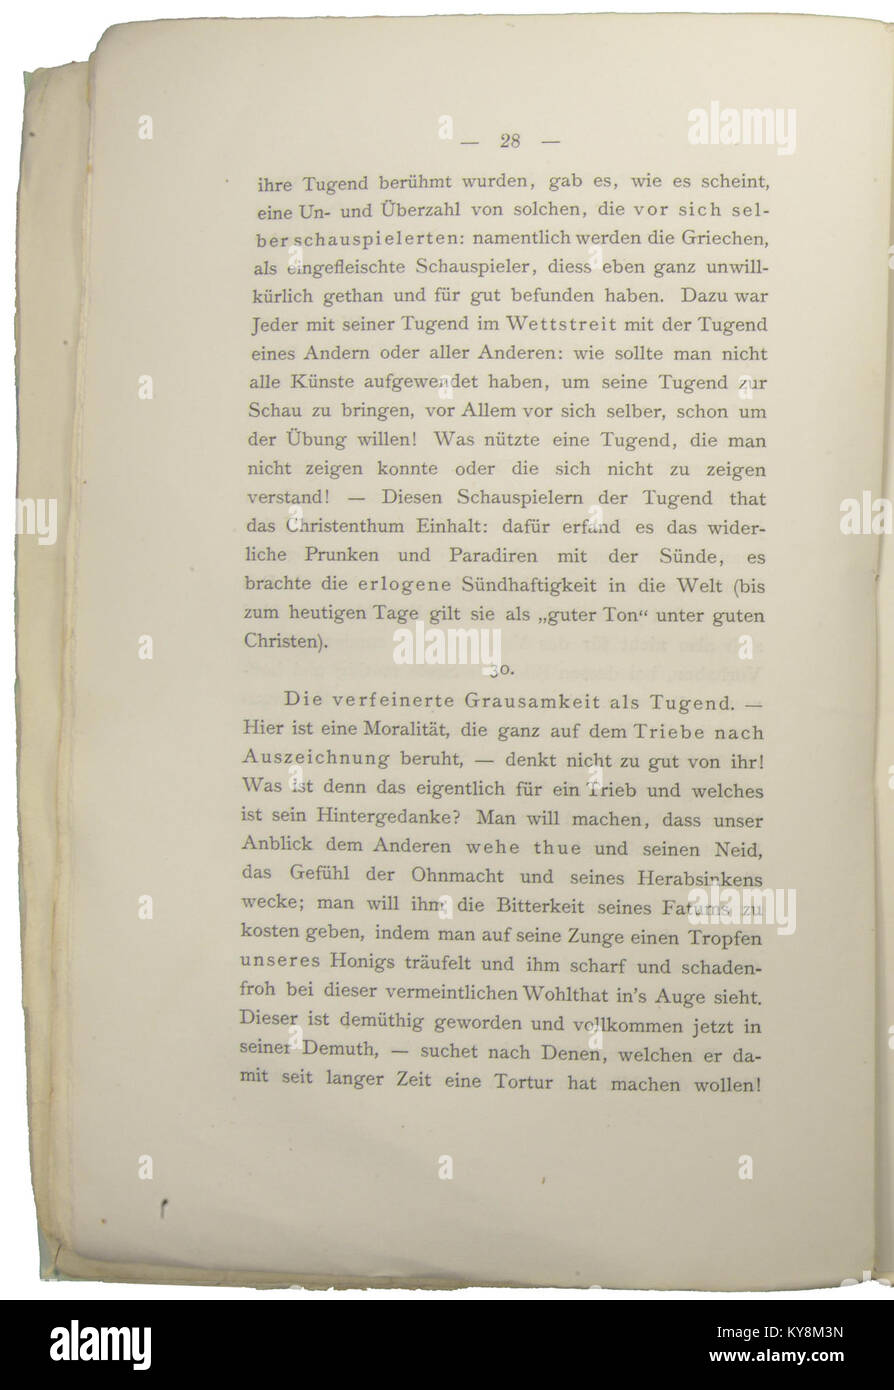 Nietzsche - Morgenröthe, 1881, p. 028 Stock Photo